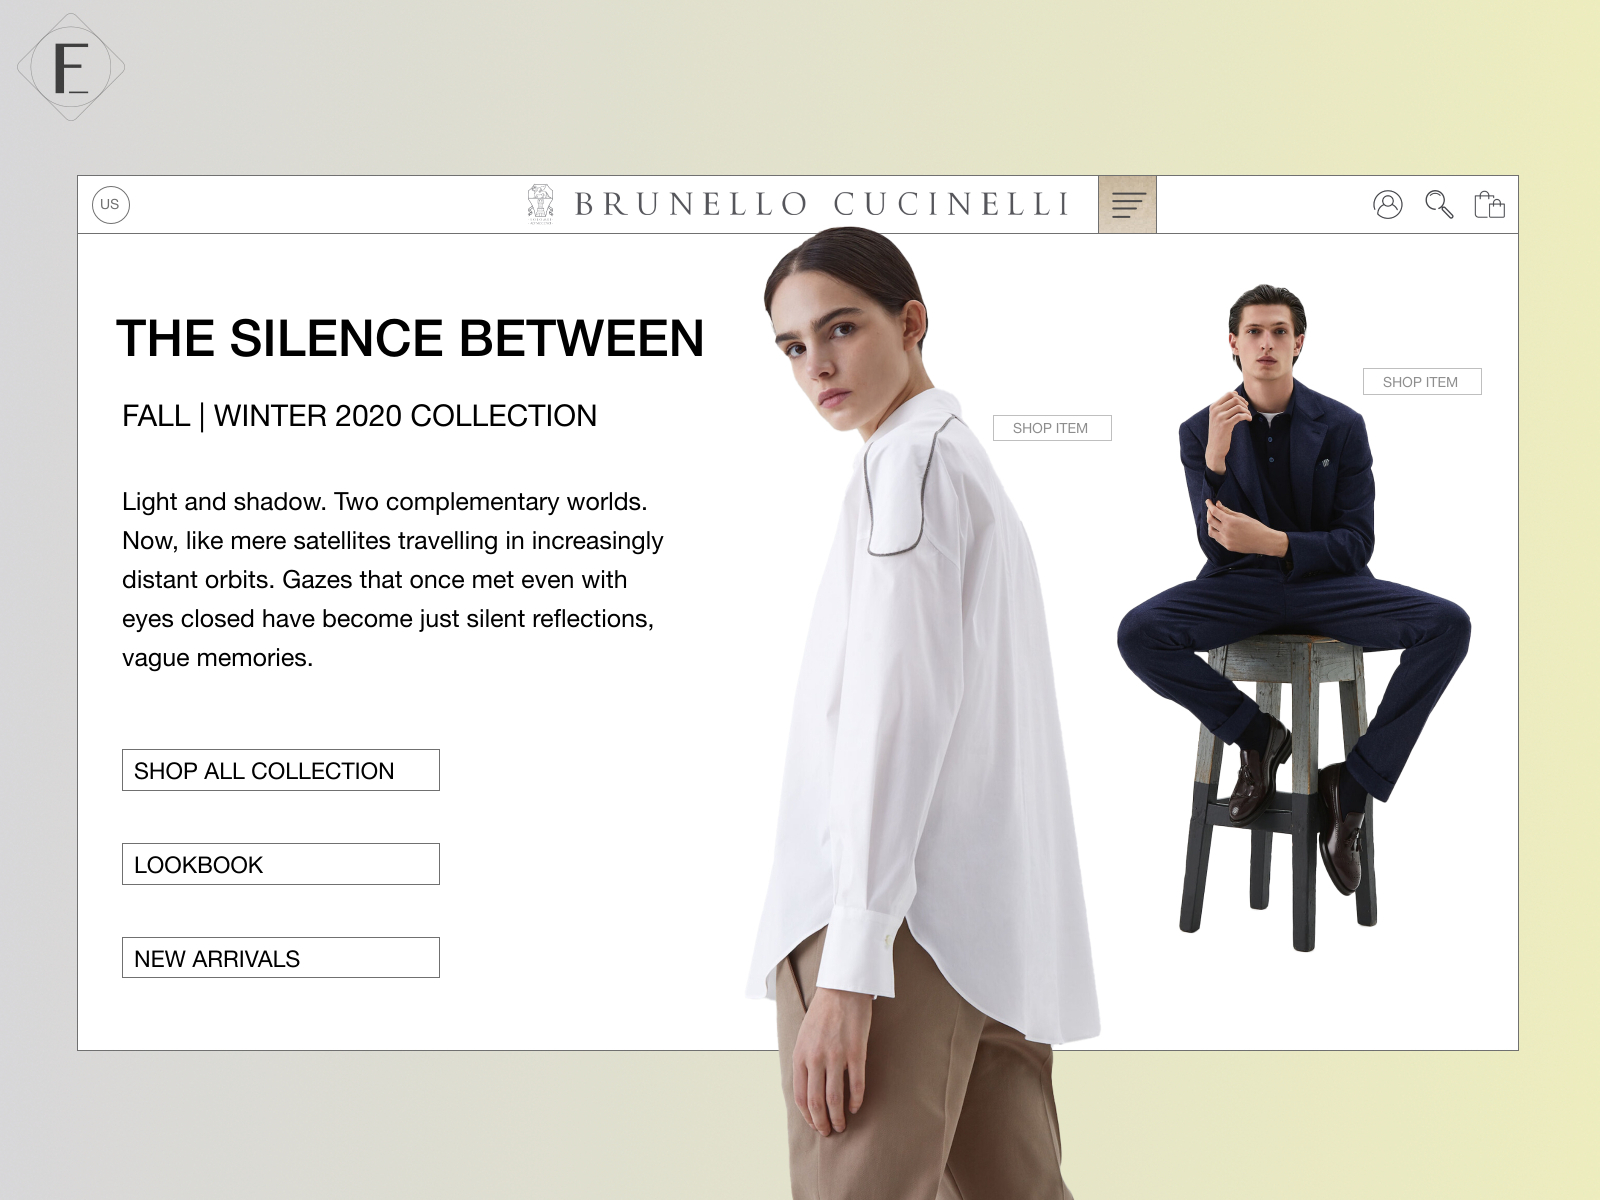 Brunello Cucinelli - Website Landing Page Redesign 2/5 by Franziam on ...